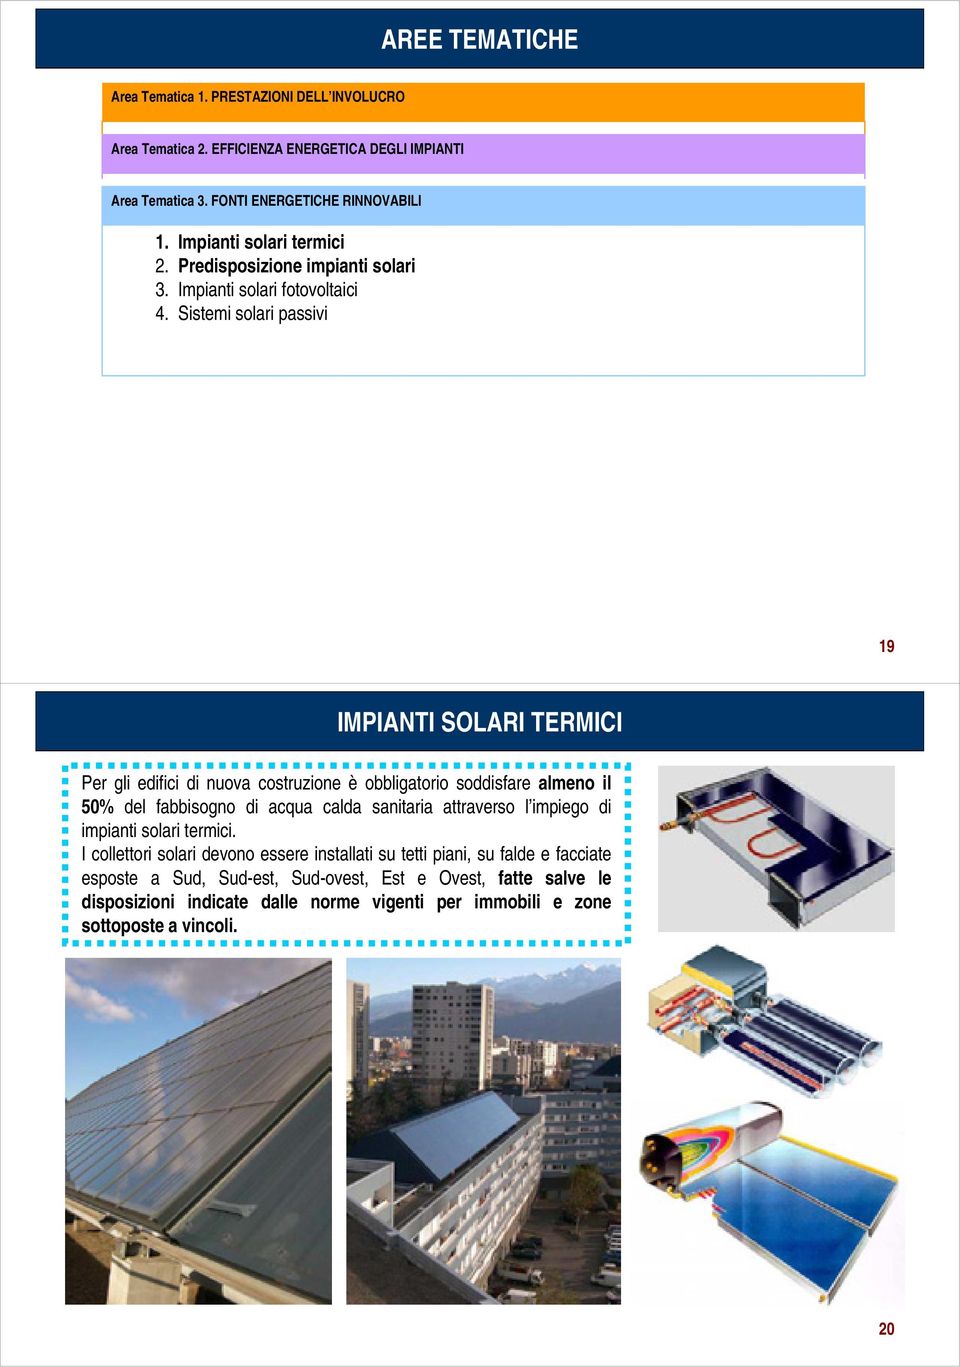 3. Contabilizzazione Impianti solari fotovoltaici energetica 6. 4. Efficienza Sistemi solari degli passivi impianti elettrici 7. Inquinamento luminoso 8.